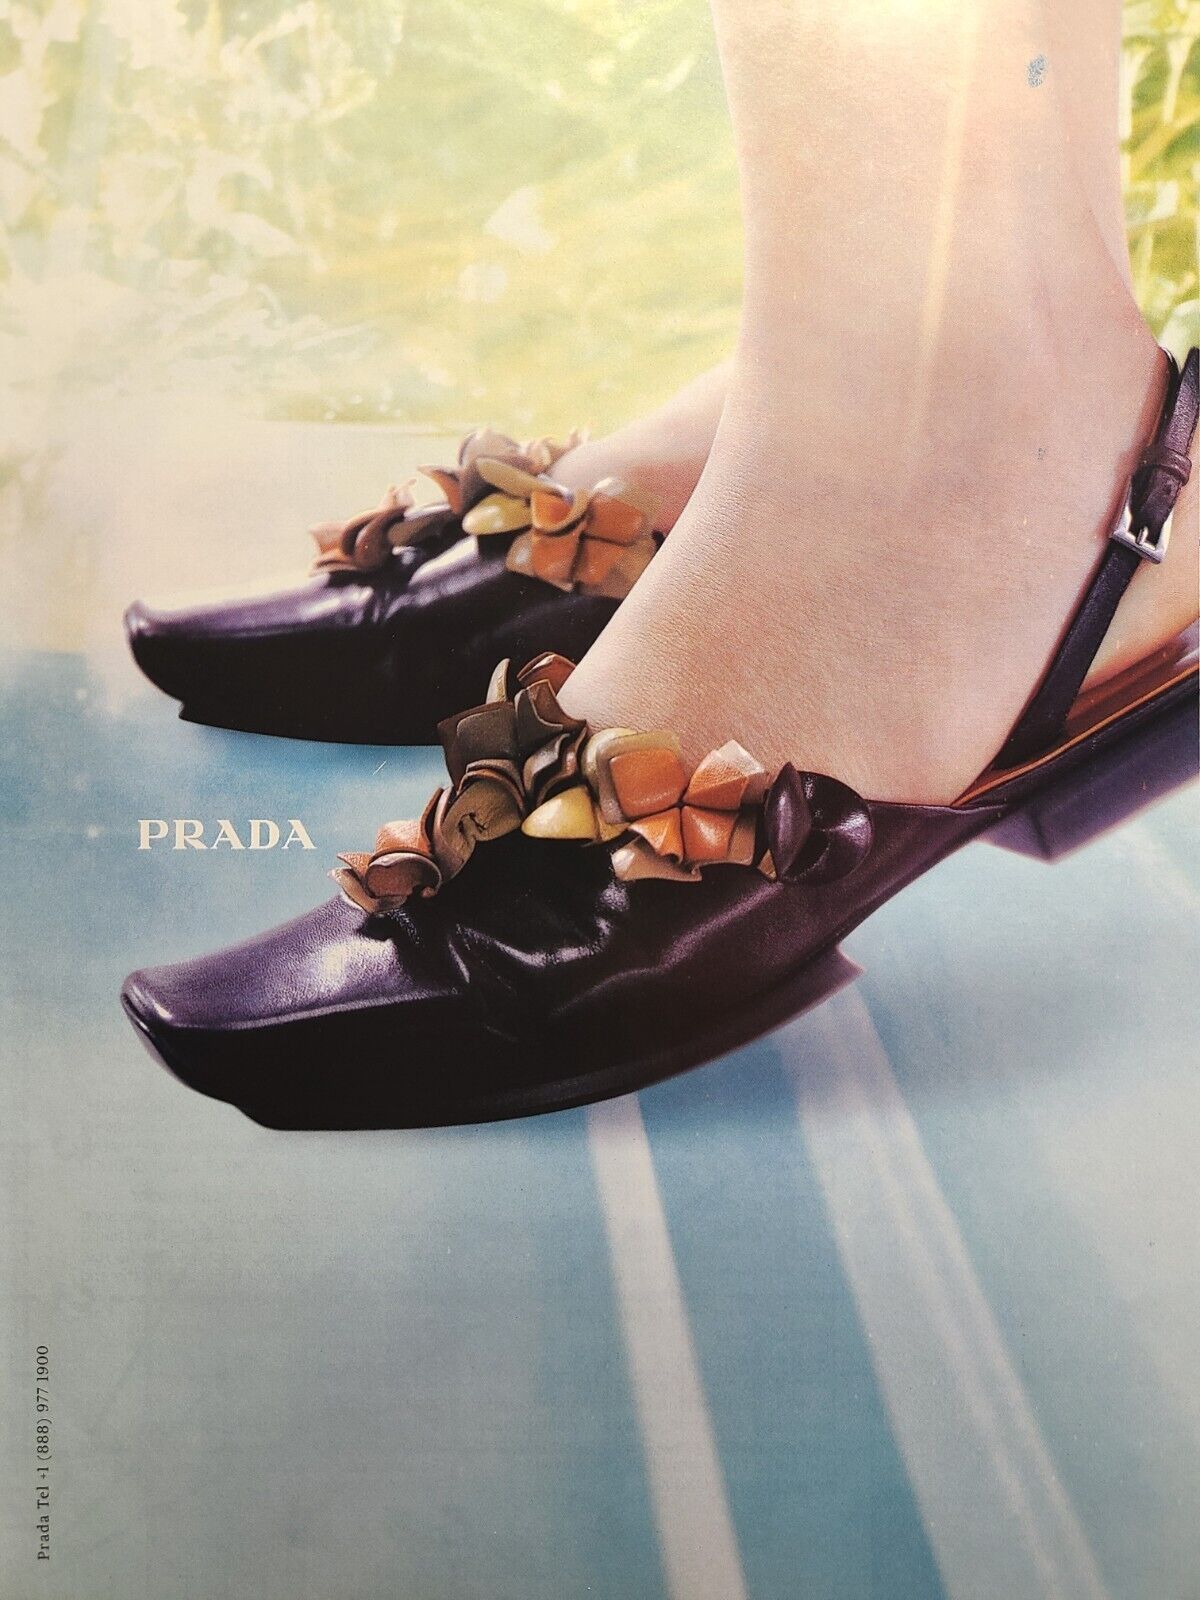 Prada Women\'s Shoes Leather Jade Floral Slingback Platform Vintage Print Ad 1999